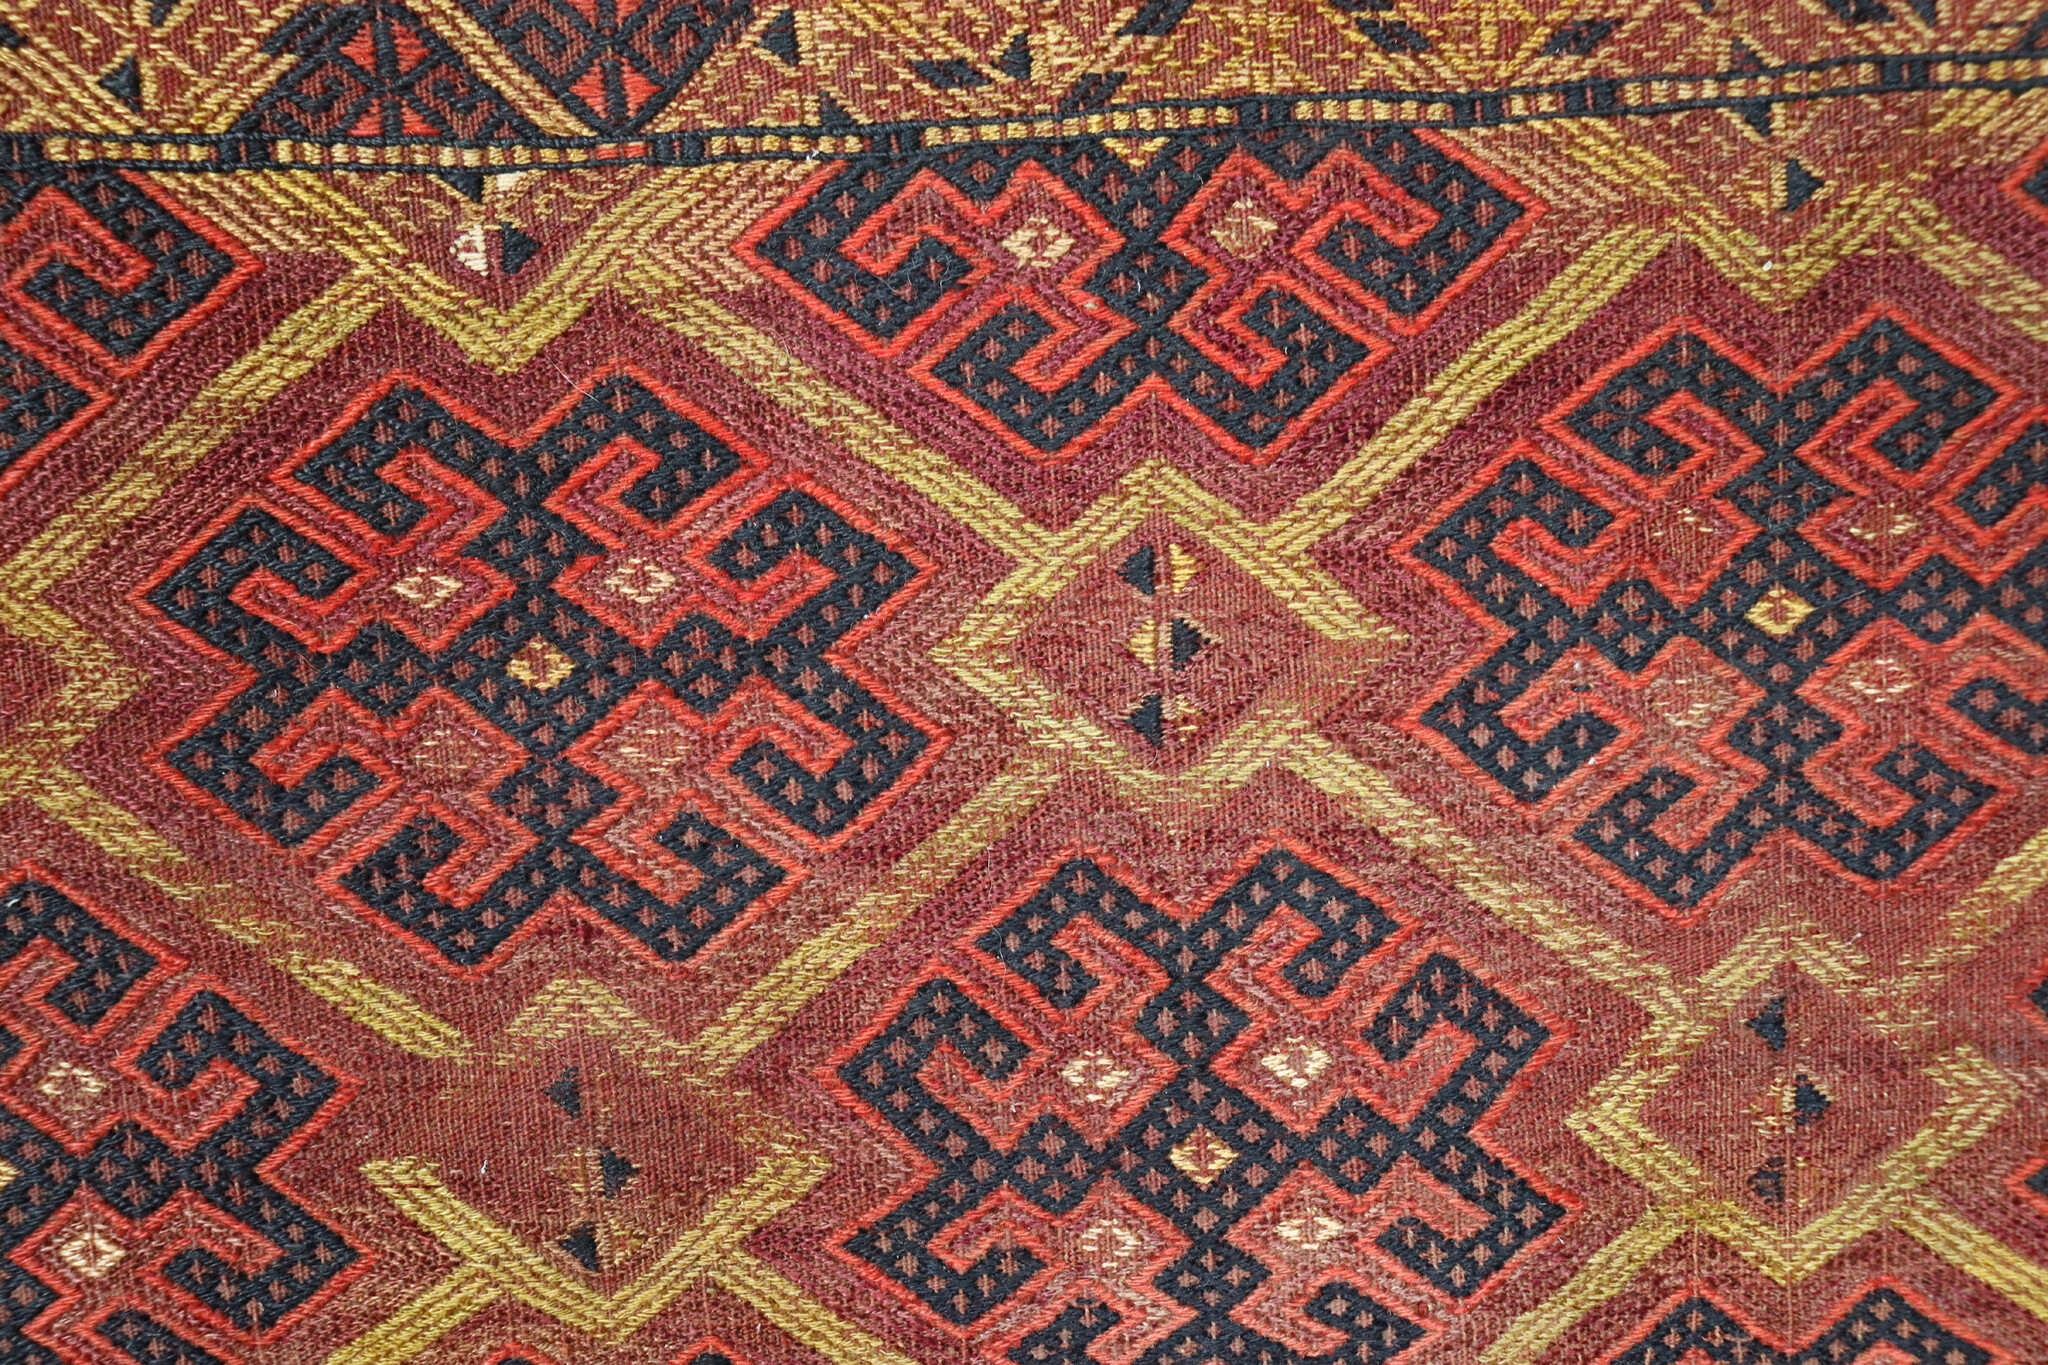 133x115 cm Antik und seltener Uzbek Nomaden Zelttasche tasche Torba aus Afghanistan Djaller Turkmenistan  Nr:EB23